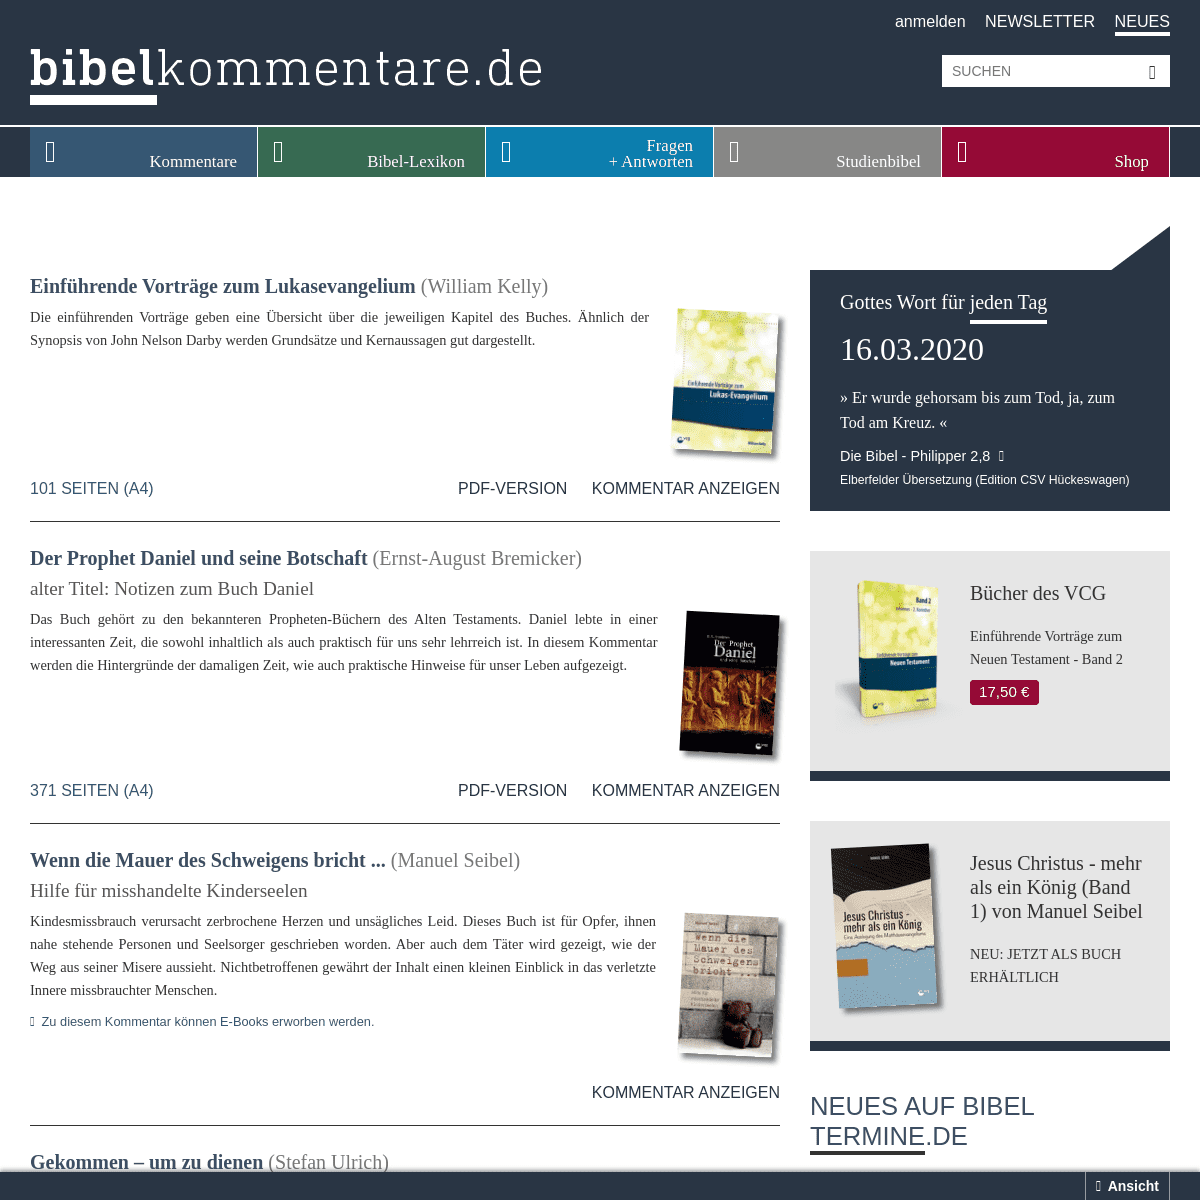 A complete backup of bibelkommentare.de